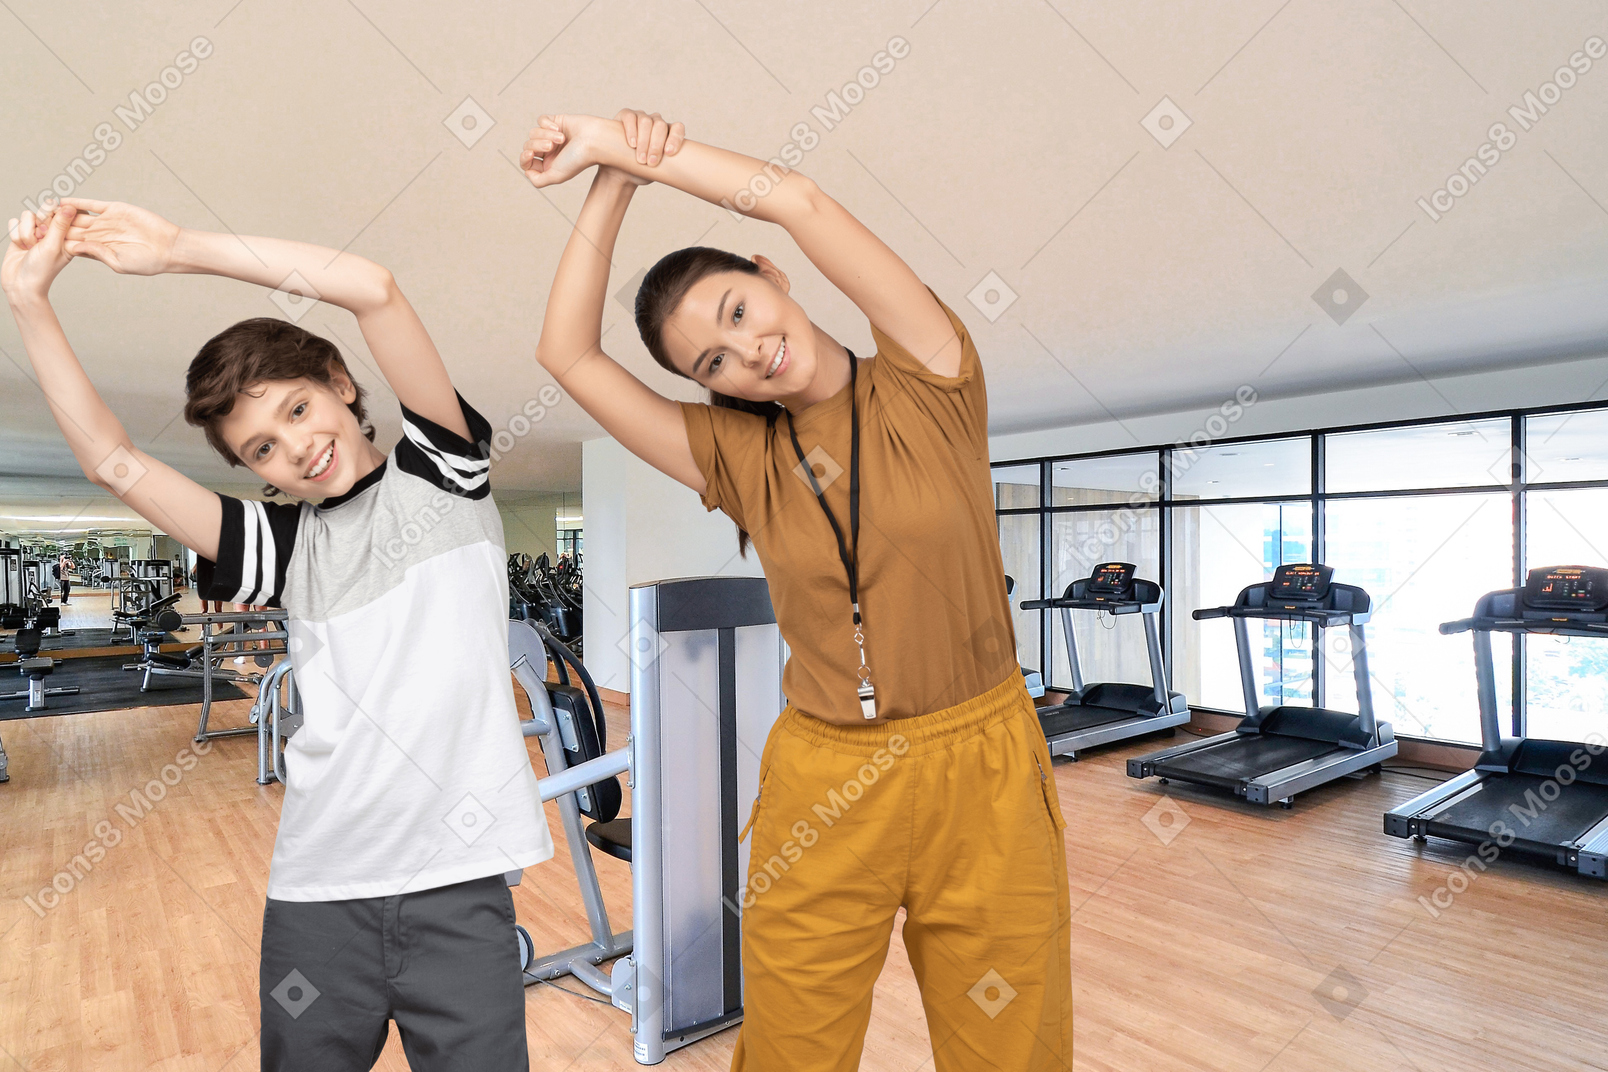 Mulher e menino malhando em uma academia